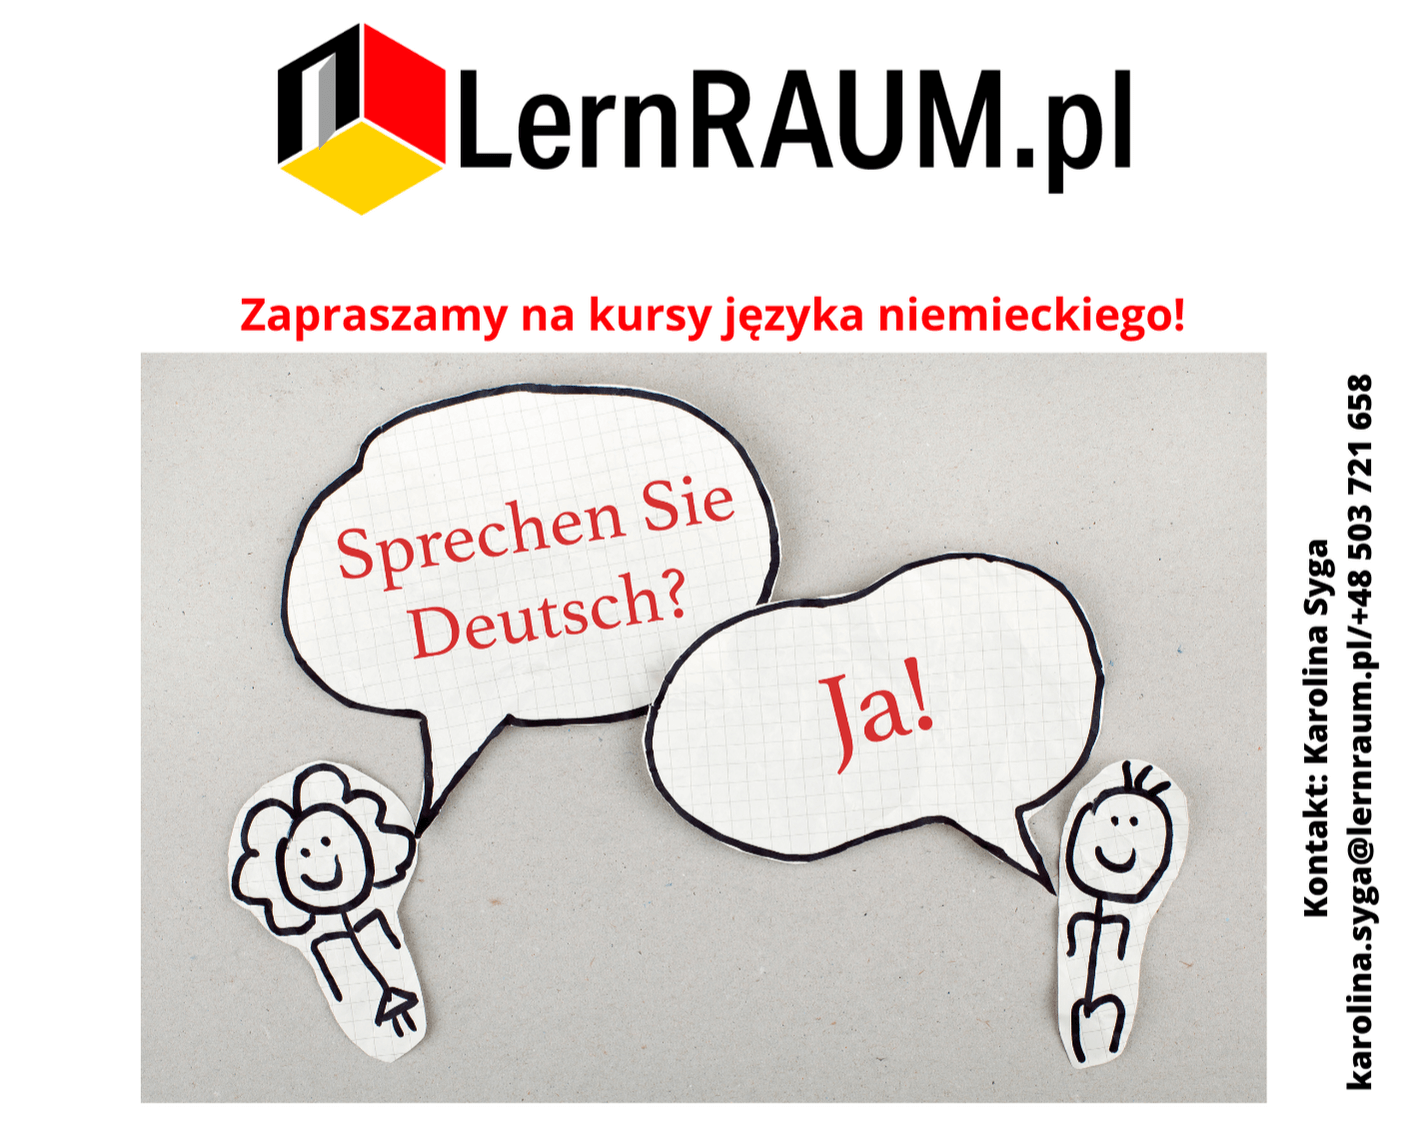 Kursy językowe w LernRAUM.pl!